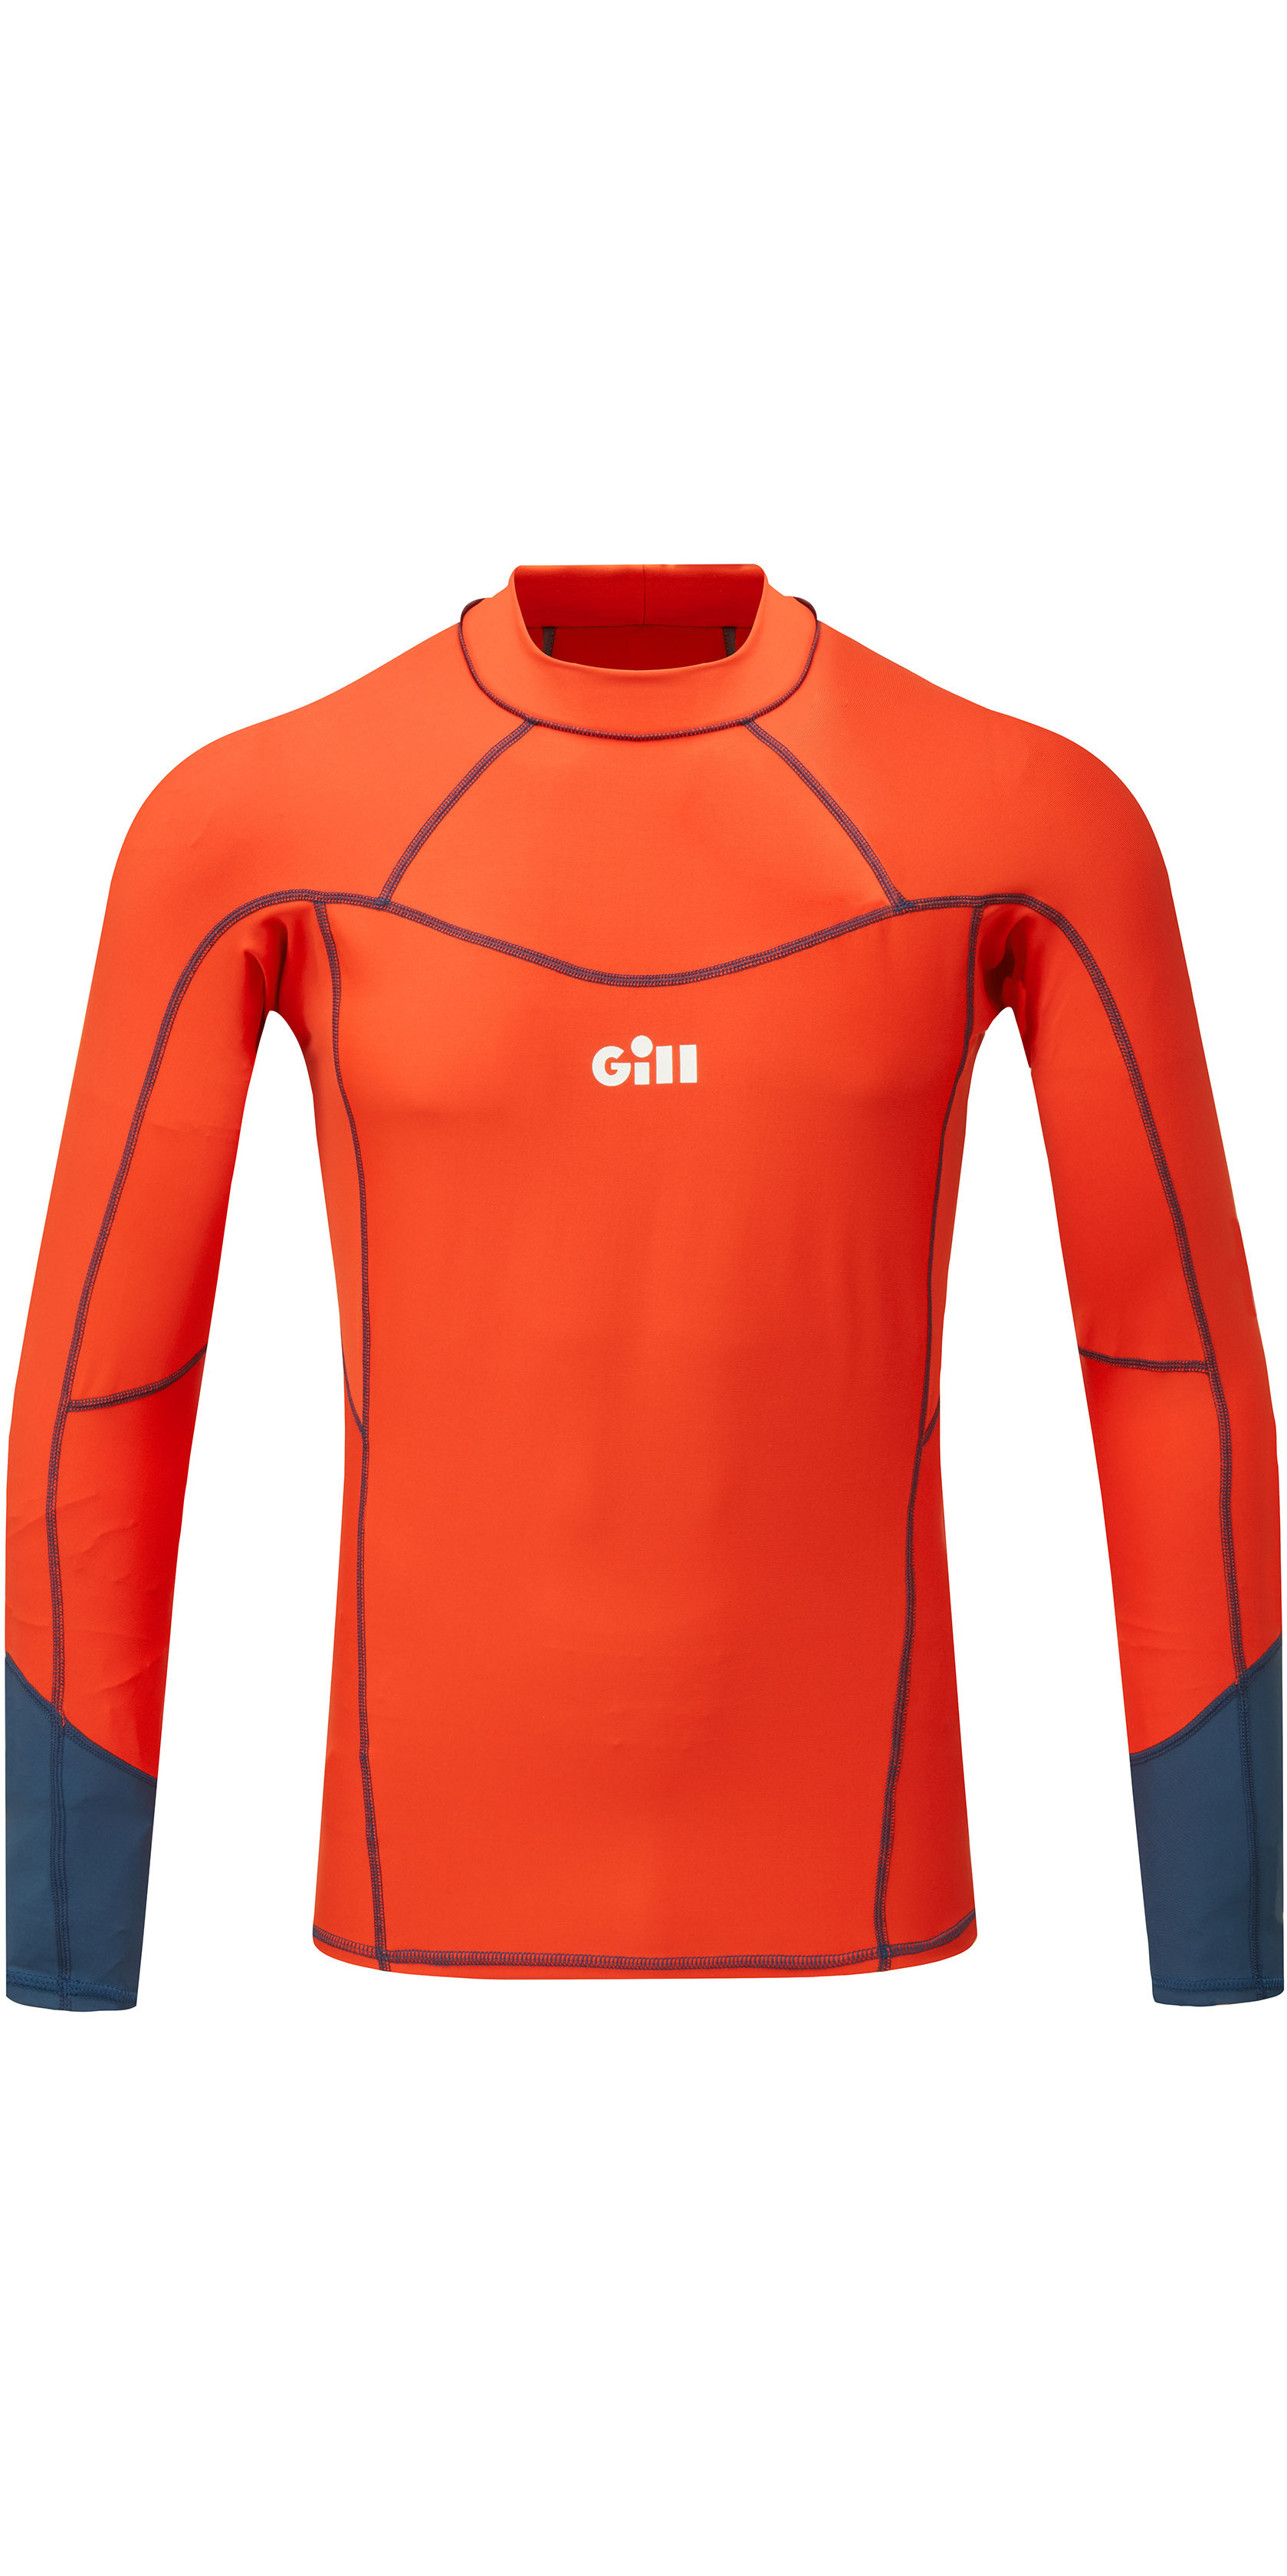 https://cdn.wetsuitoutlet.co.uk/images/32736-Gill-Mens-Pro-Long-Sleeve-Rash-Vest-5020---Orange.jpg